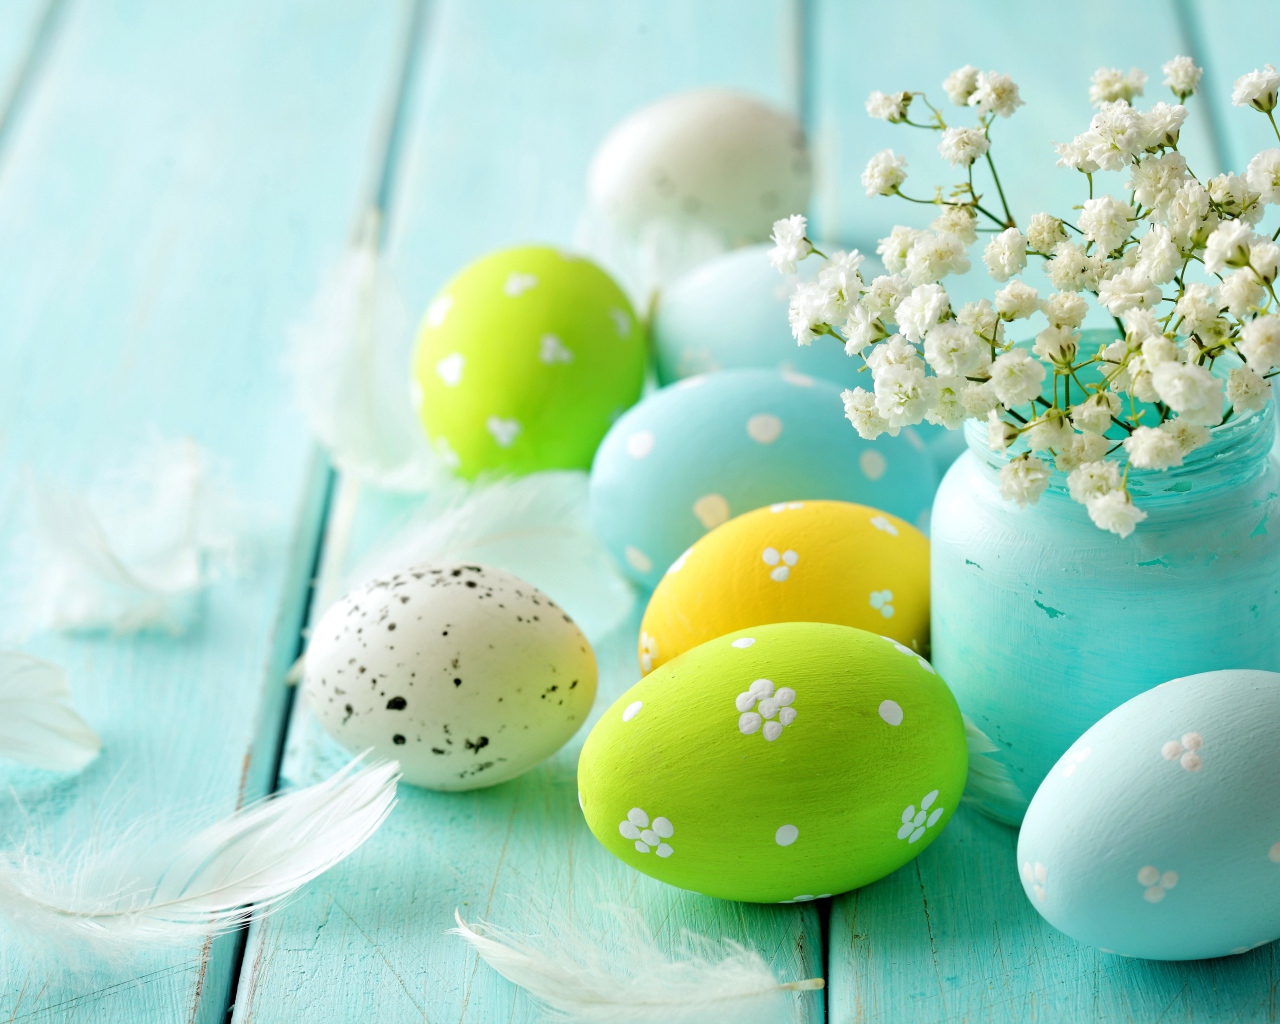 Крашеные яйца с цветами на голубом столе 